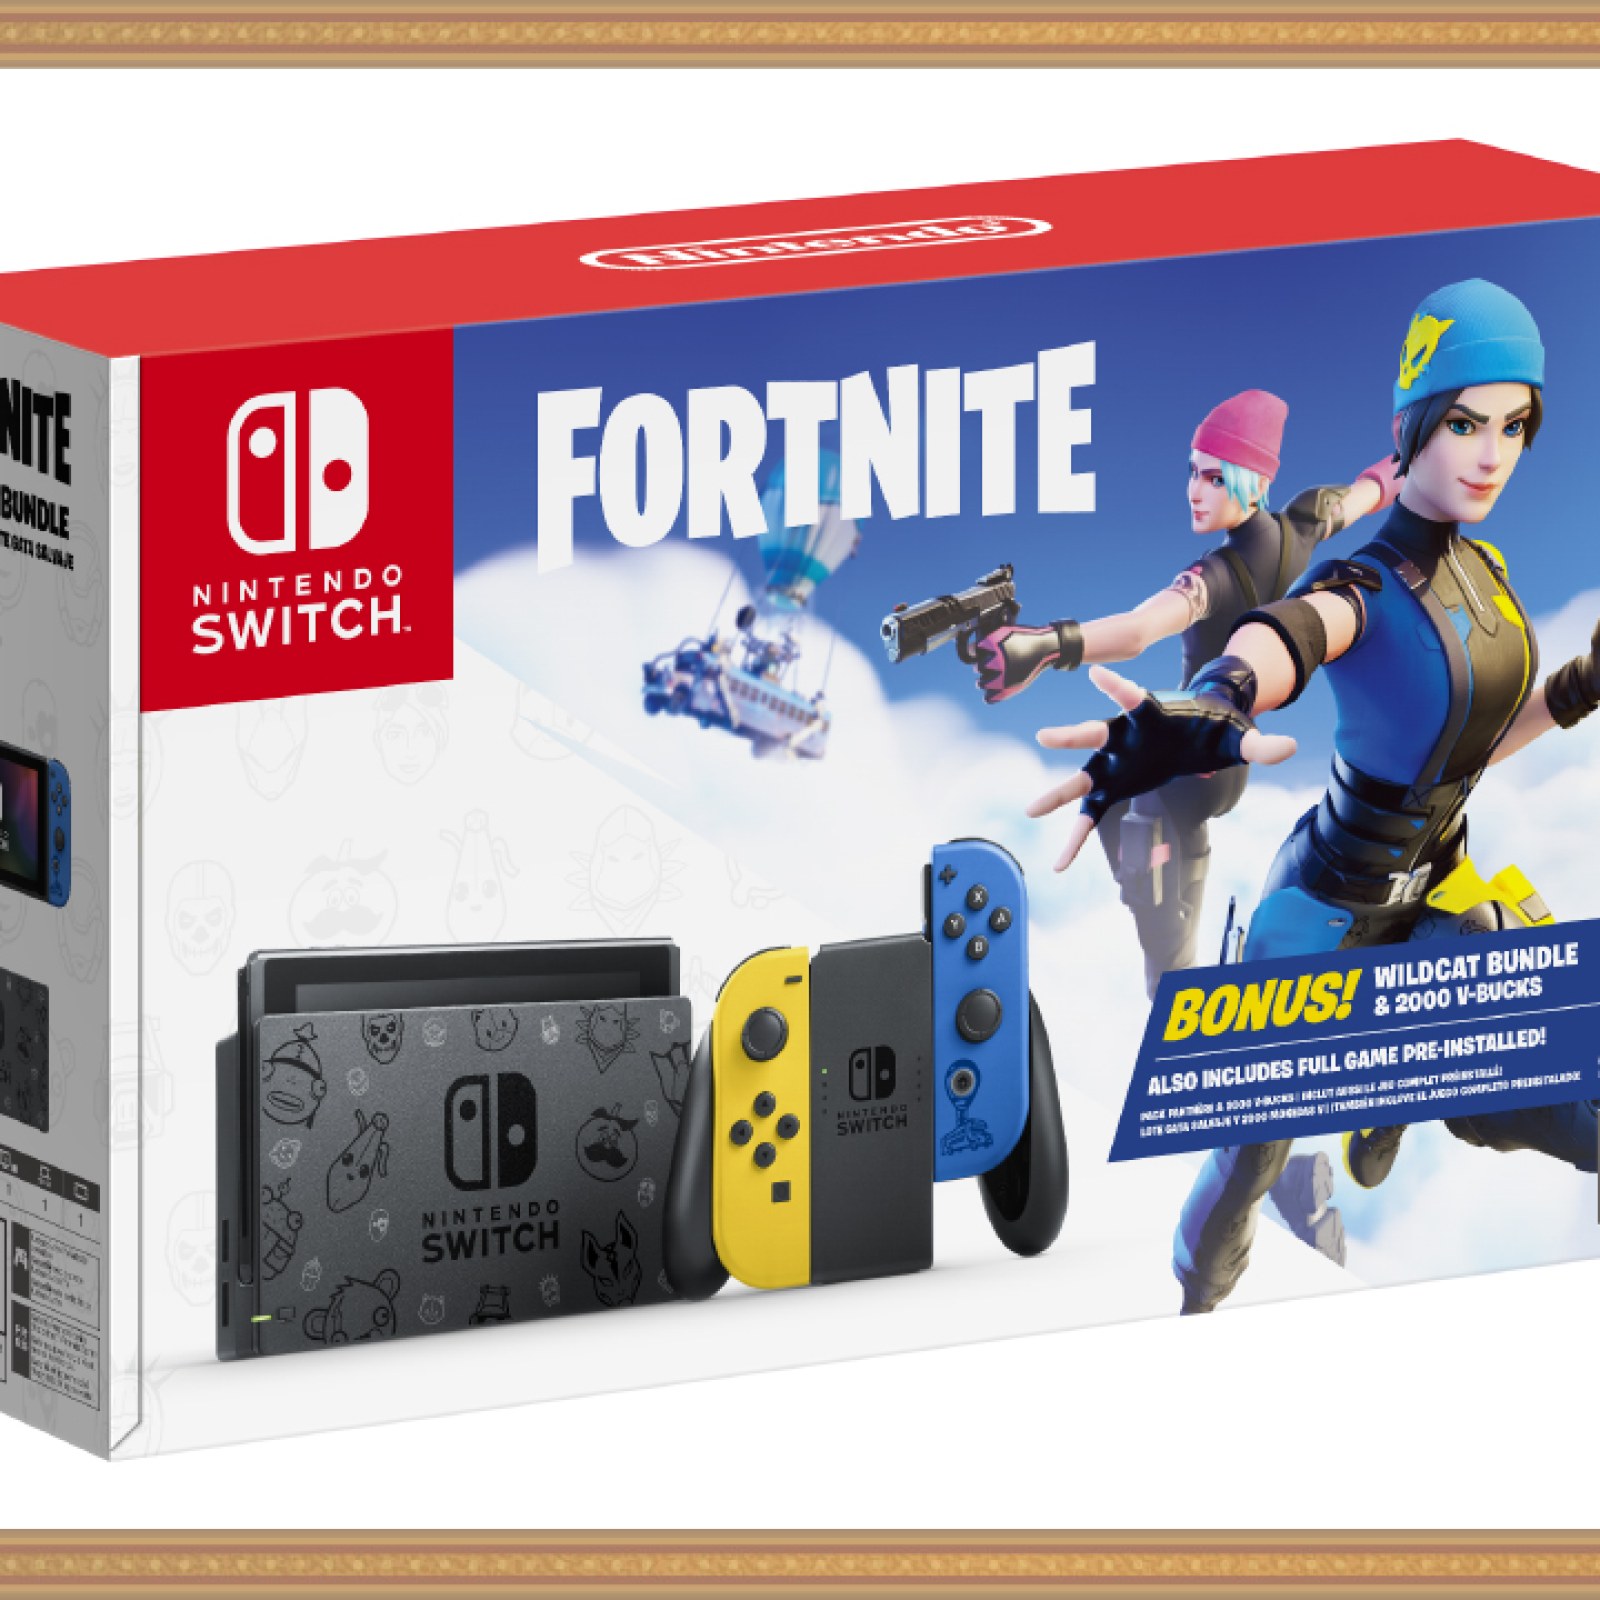 overfladisk Dolke ledningsfri Nintendo Cyber Monday: Fortnite Switch Bundle and More Games On Sale